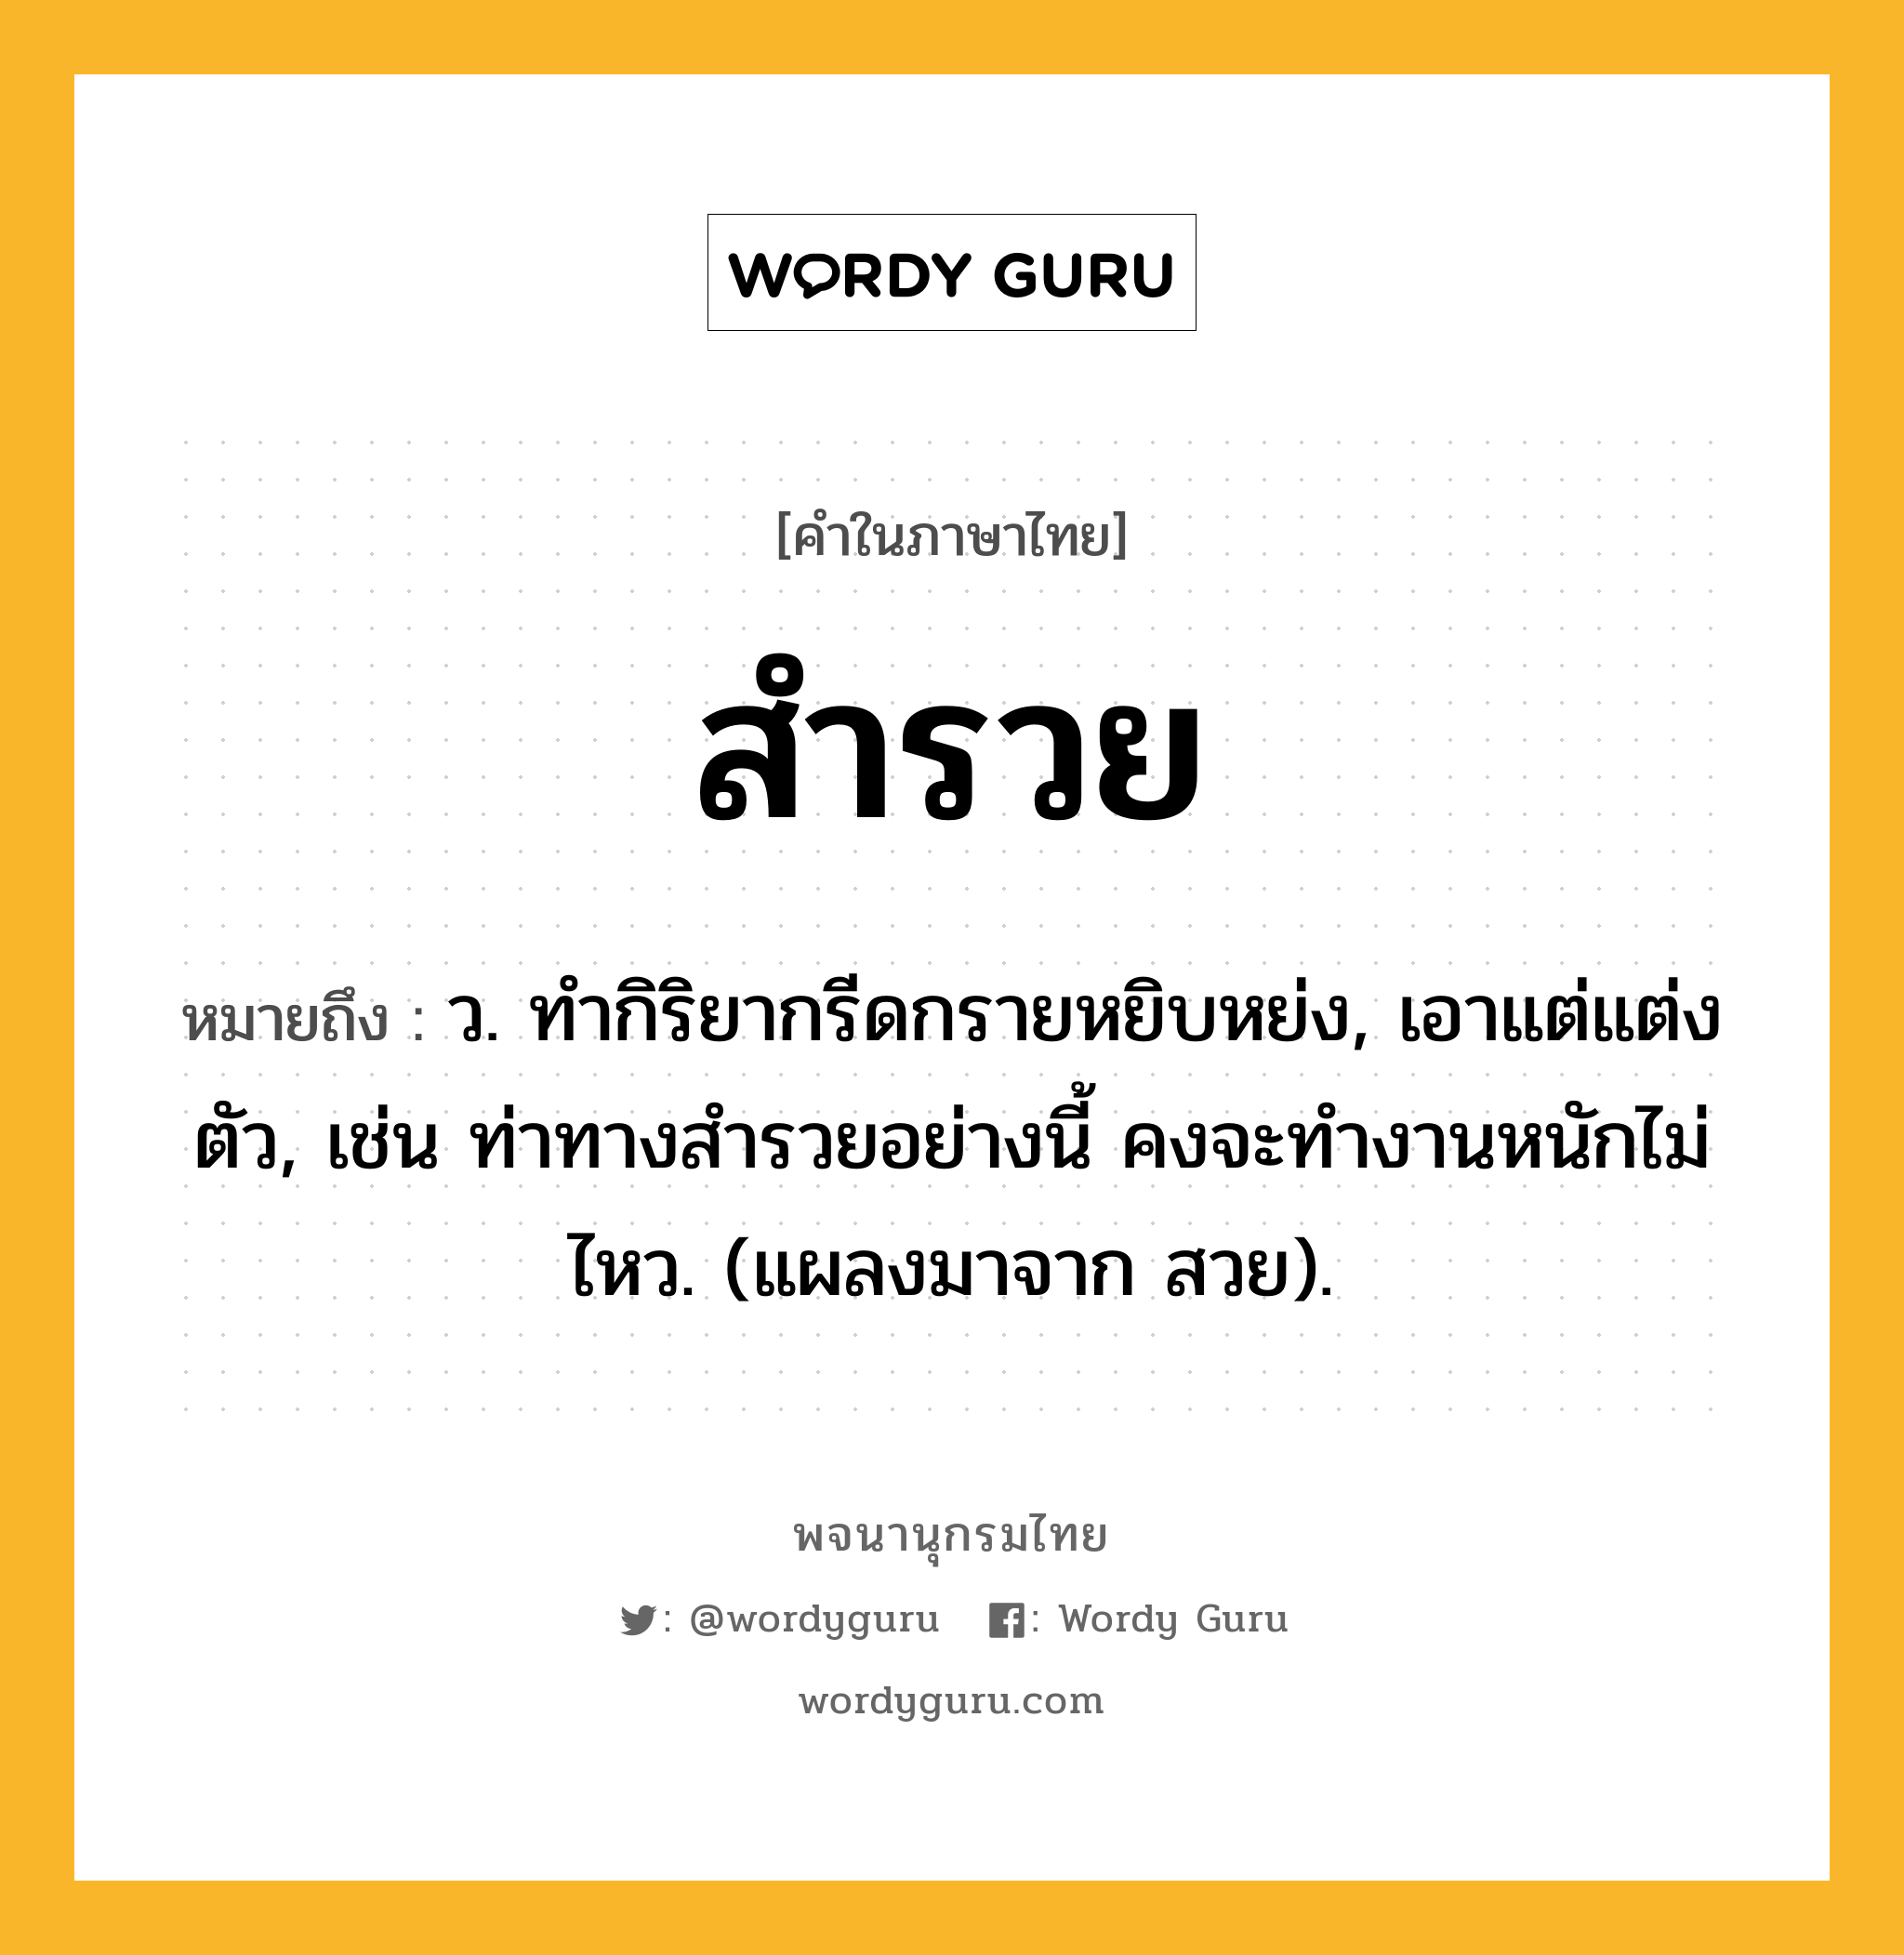 สำรวย ความหมาย หมายถึงอะไร?, คำในภาษาไทย สำรวย หมายถึง ว. ทํากิริยากรีดกรายหยิบหย่ง, เอาแต่แต่งตัว, เช่น ท่าทางสำรวยอย่างนี้ คงจะทำงานหนักไม่ไหว. (แผลงมาจาก สวย).